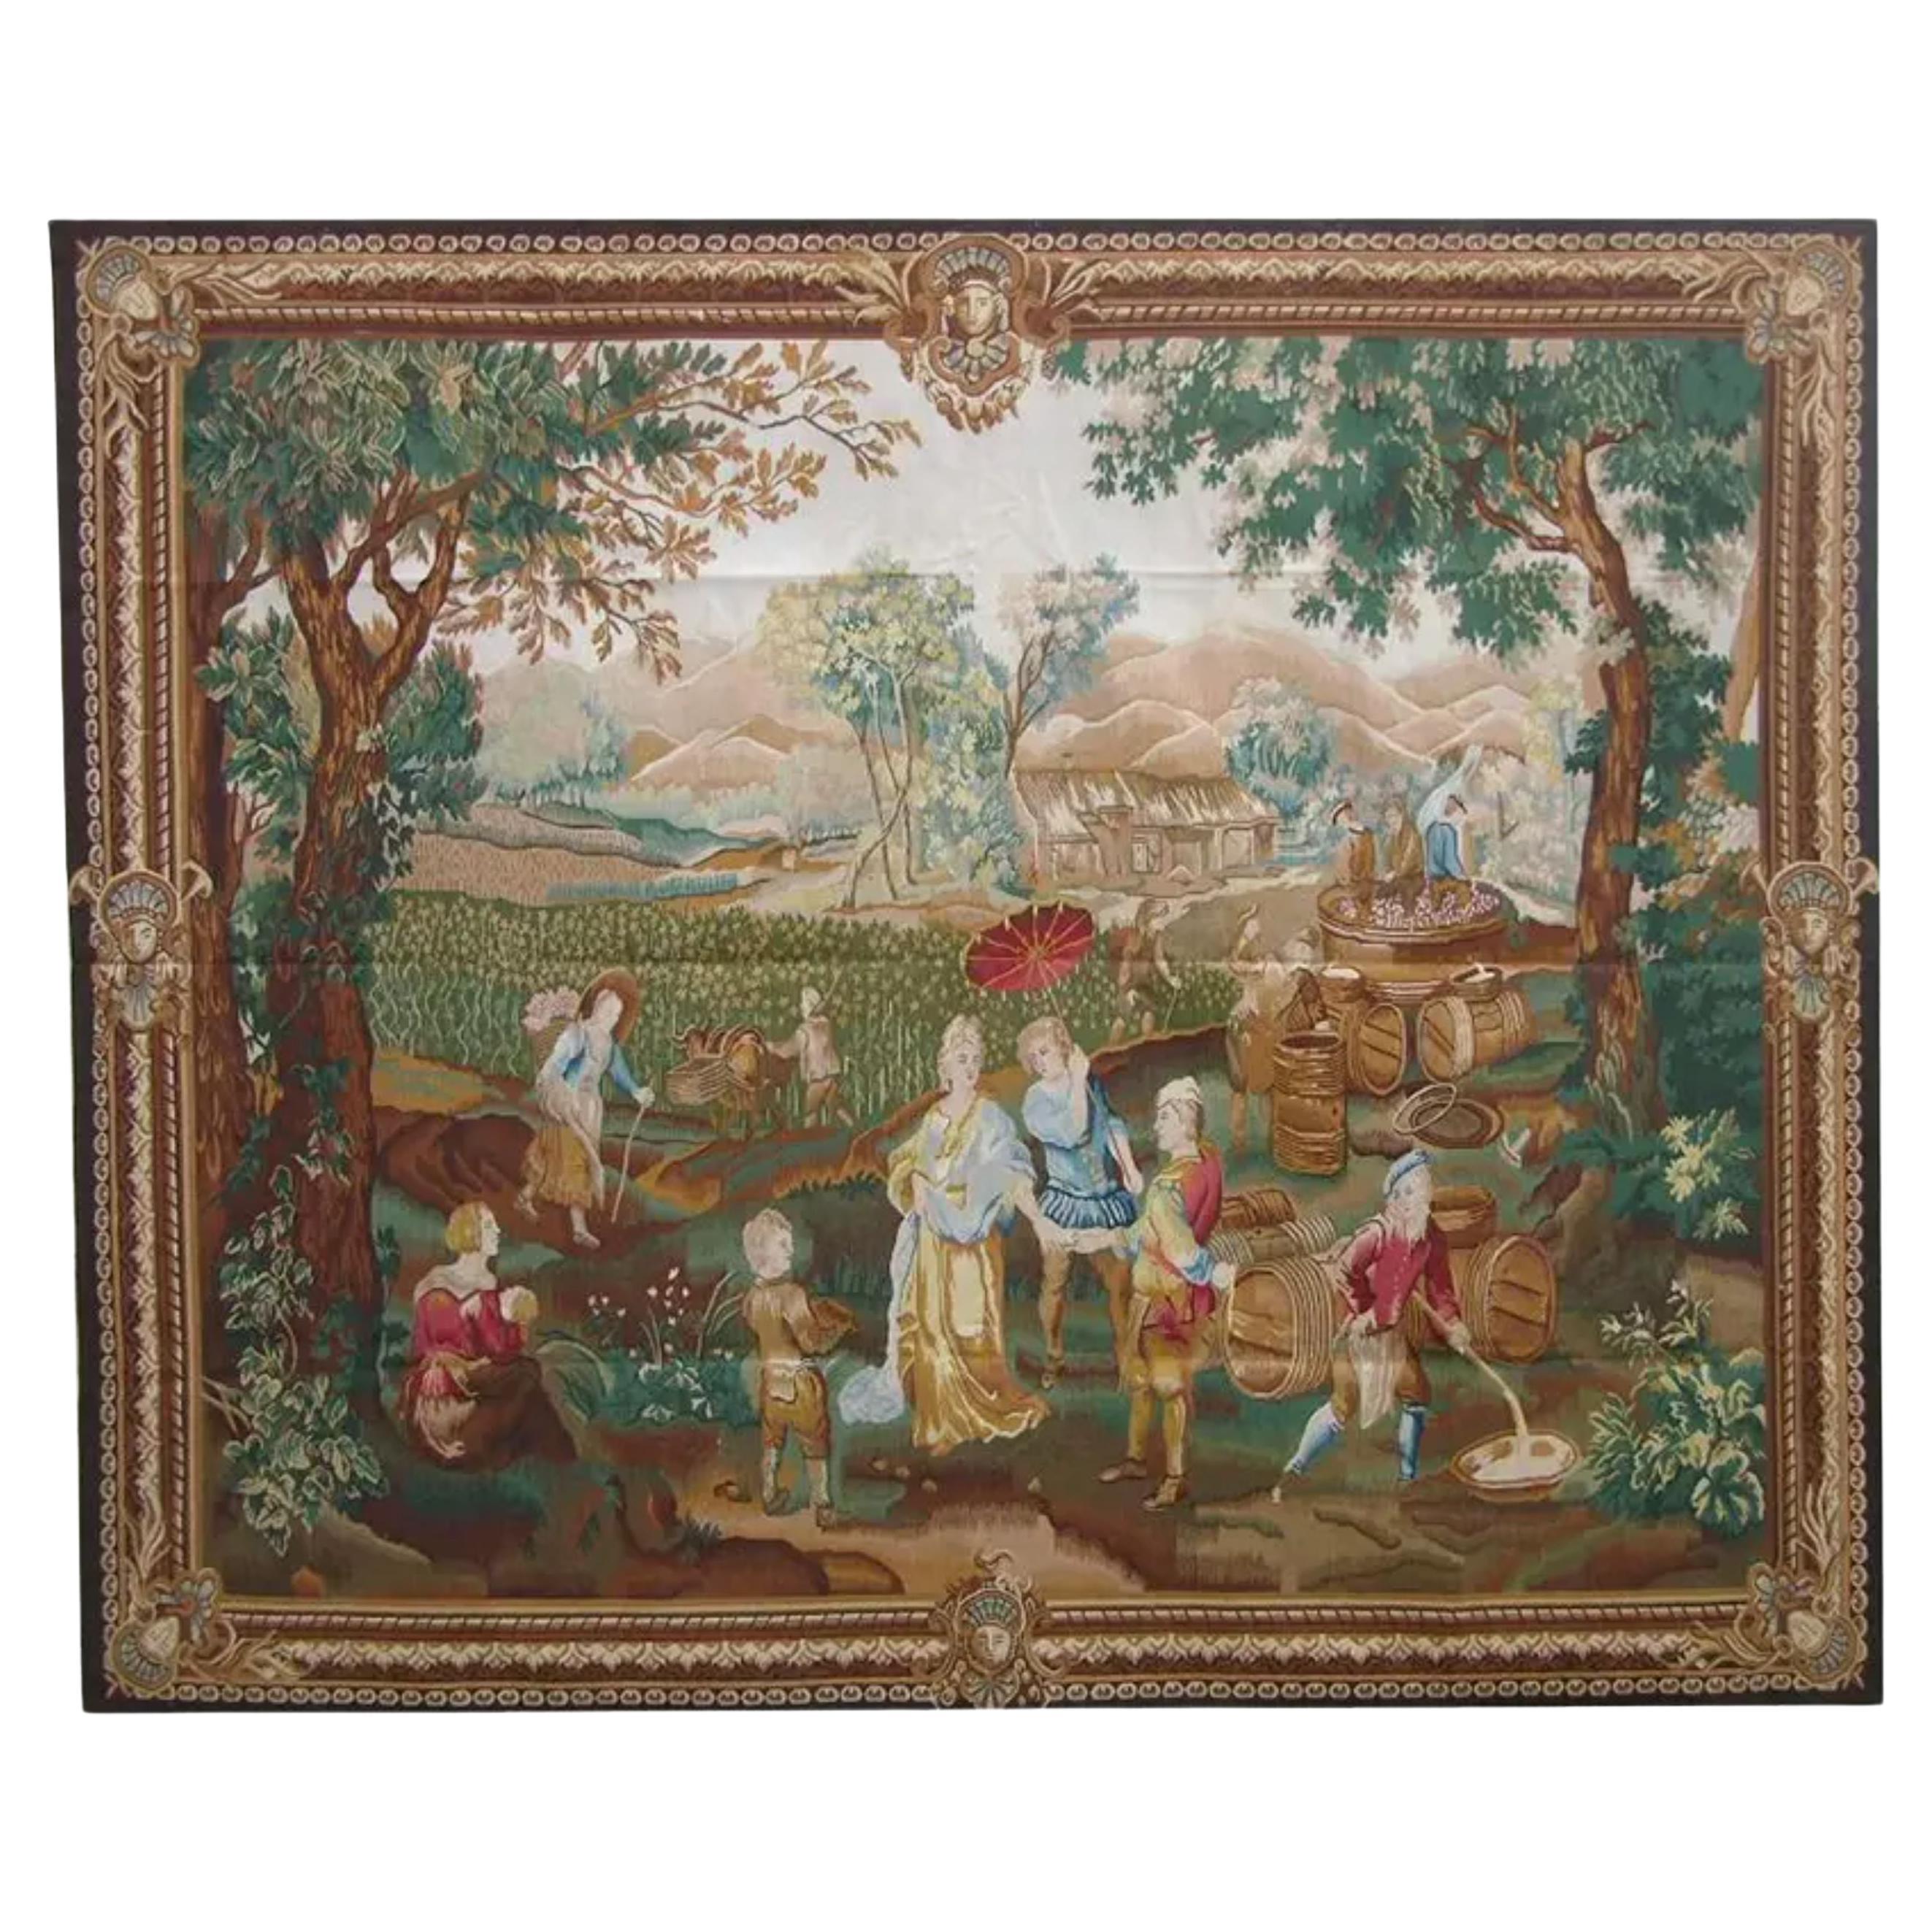 Wandteppich mit königlicher Darstellung, 8X6,5